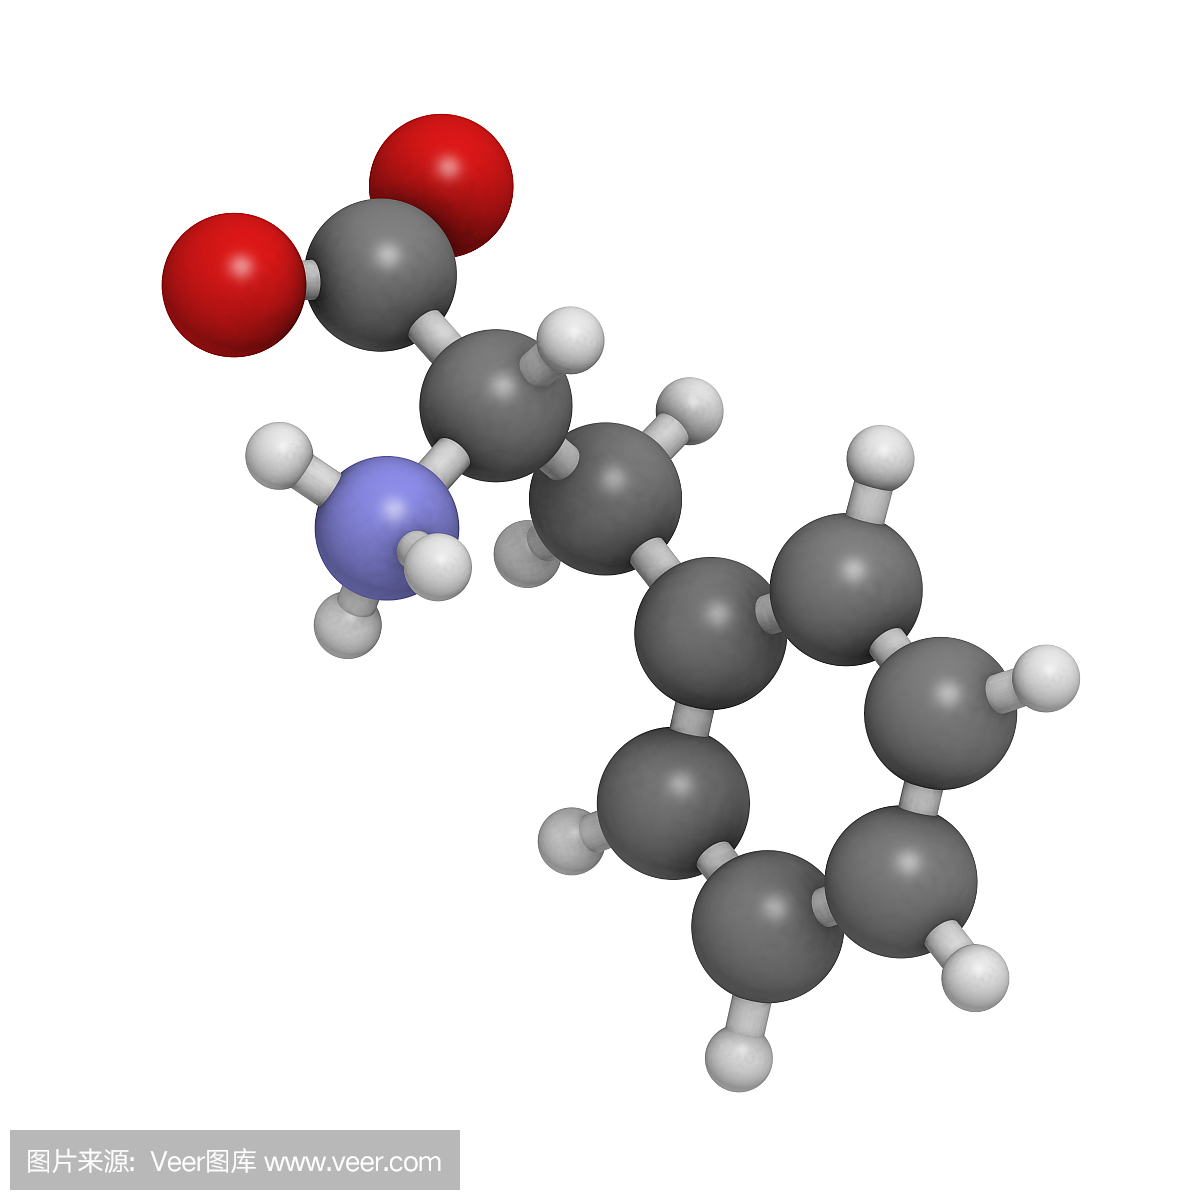 苯丙氨酸(Phe,F)氨基酸,分子模型。